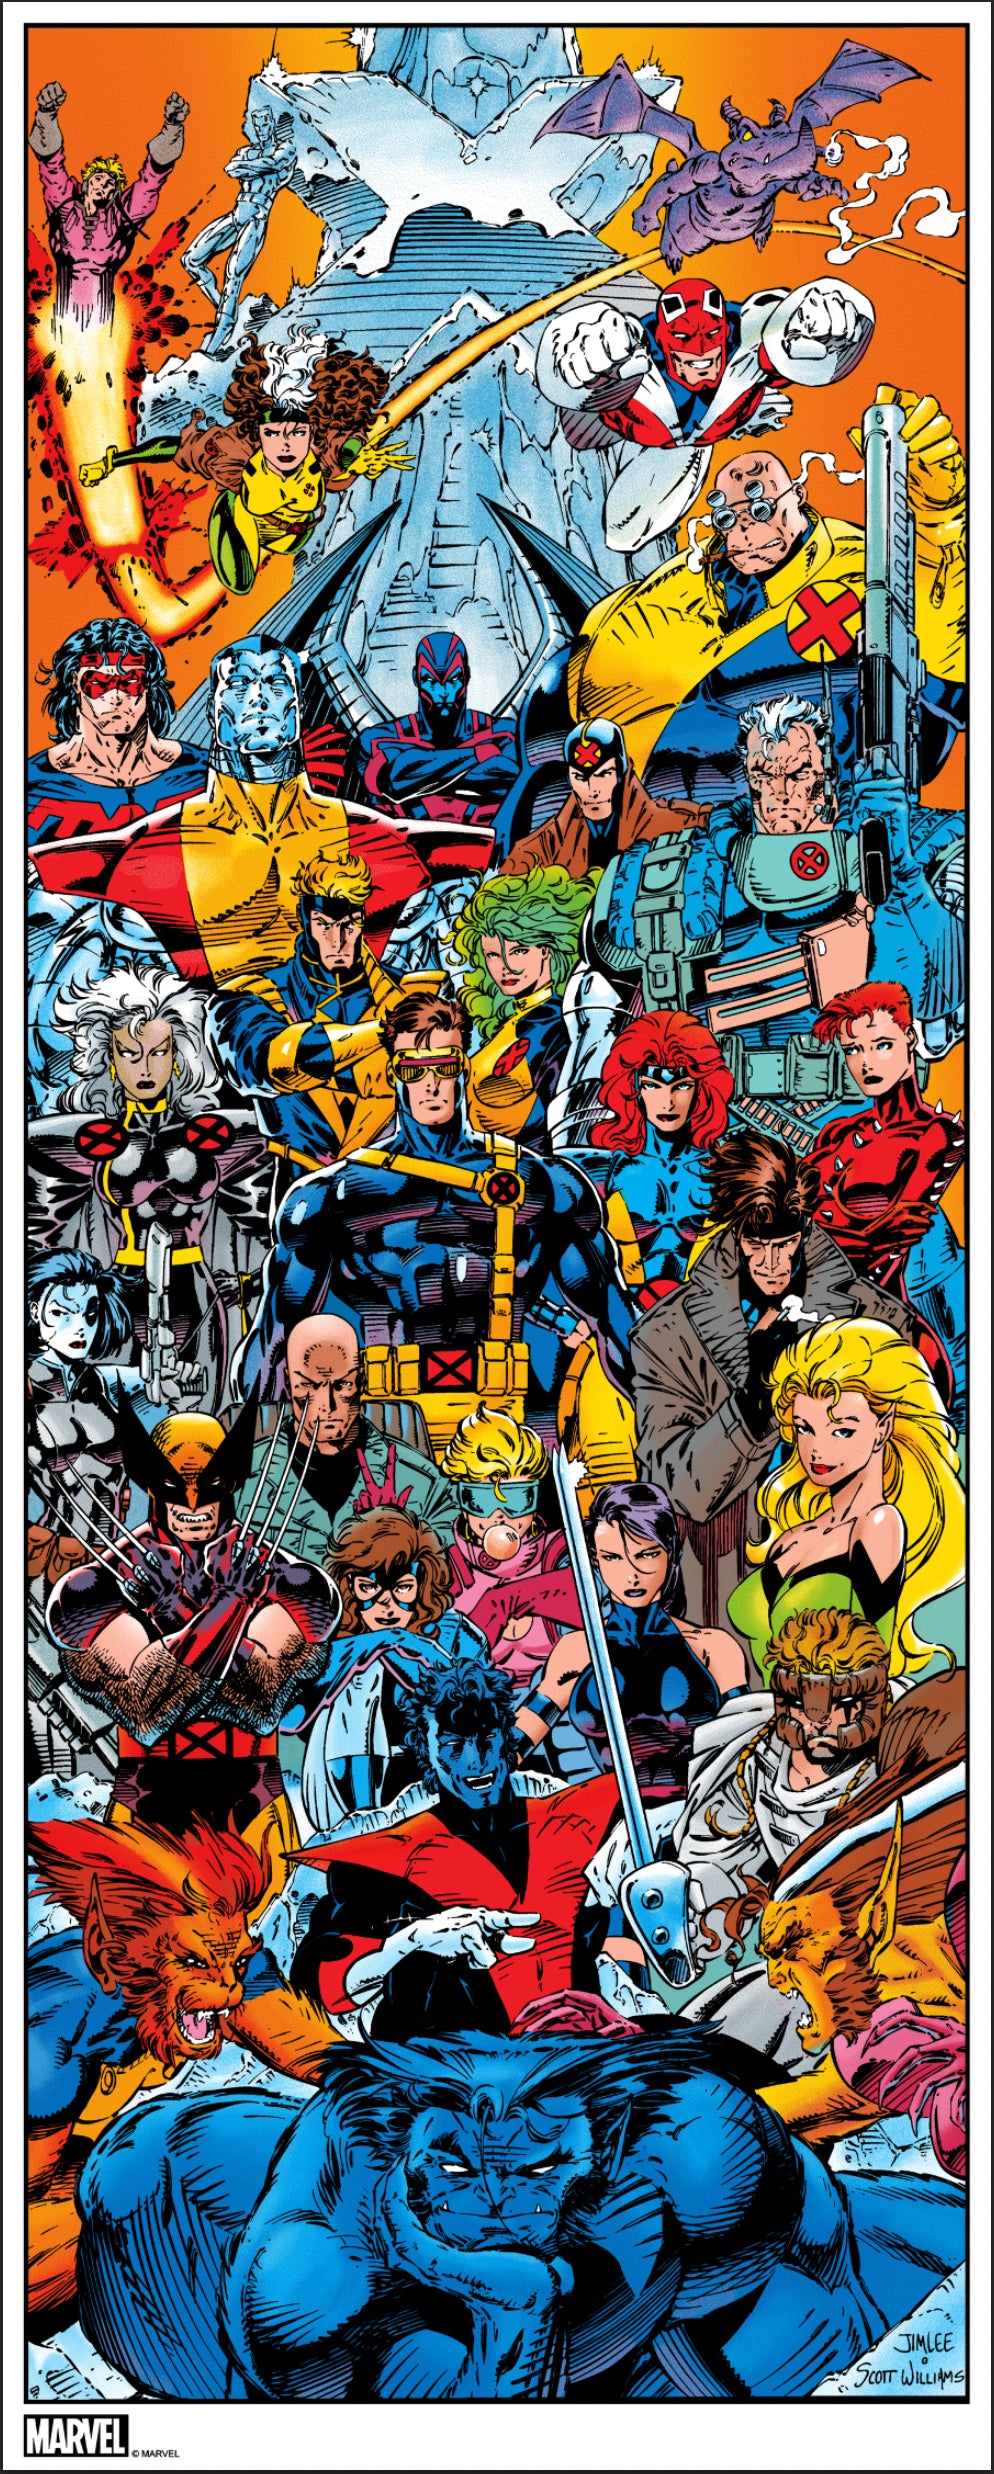 Jim Lee "X-Men"